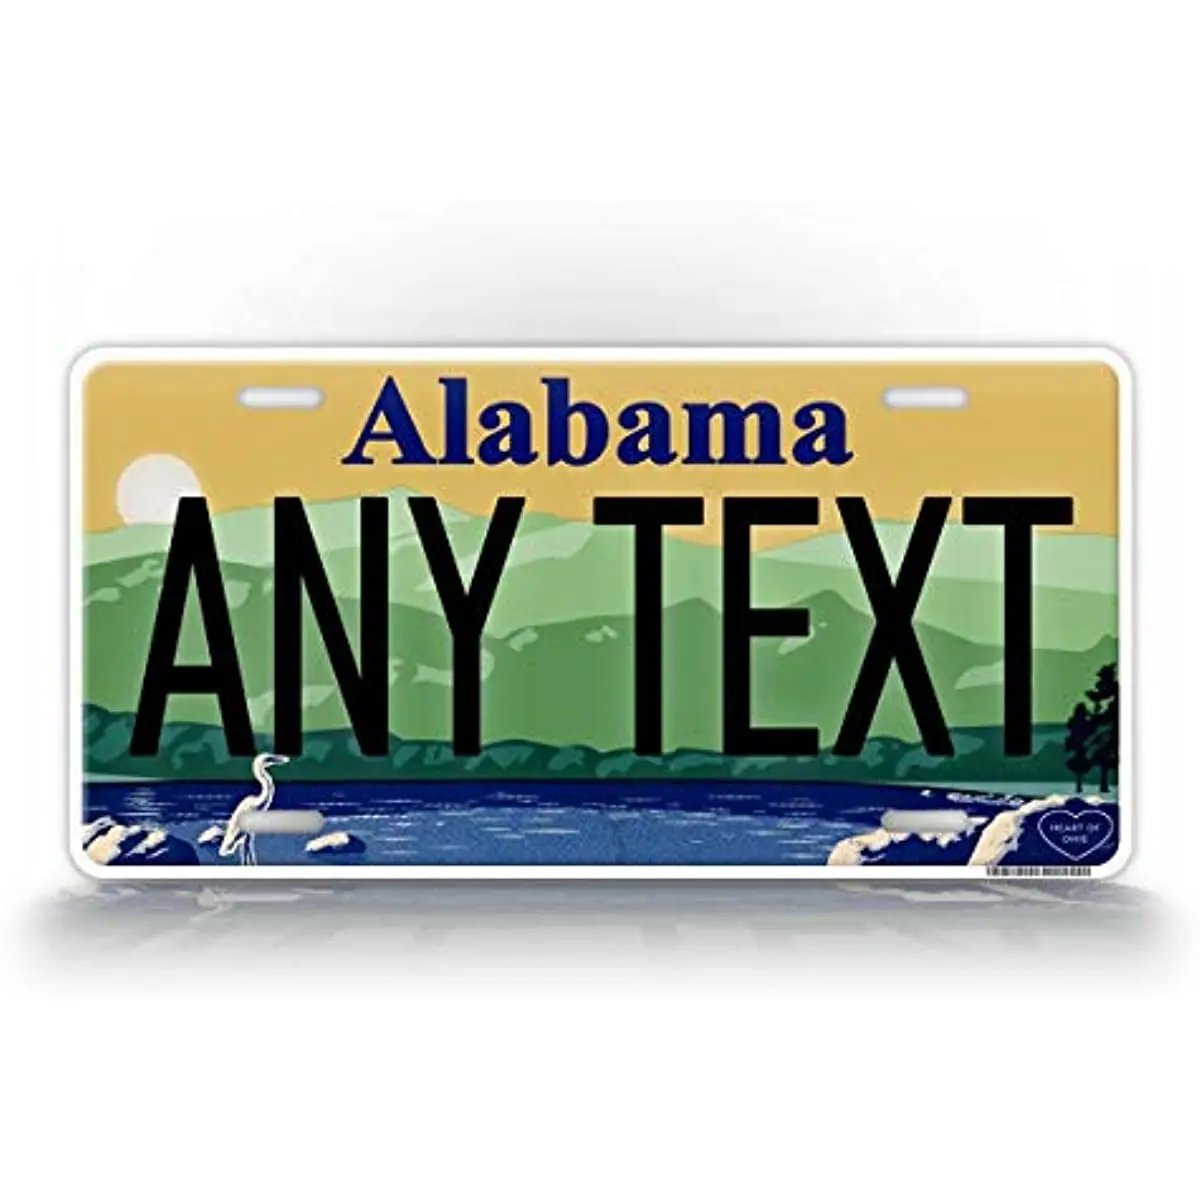 

Оригинальный номерной знак штата Алабама, копия AL, персонализированный текст, новинка, автомобильная бирка, украшение для стены, металлический настенный знак